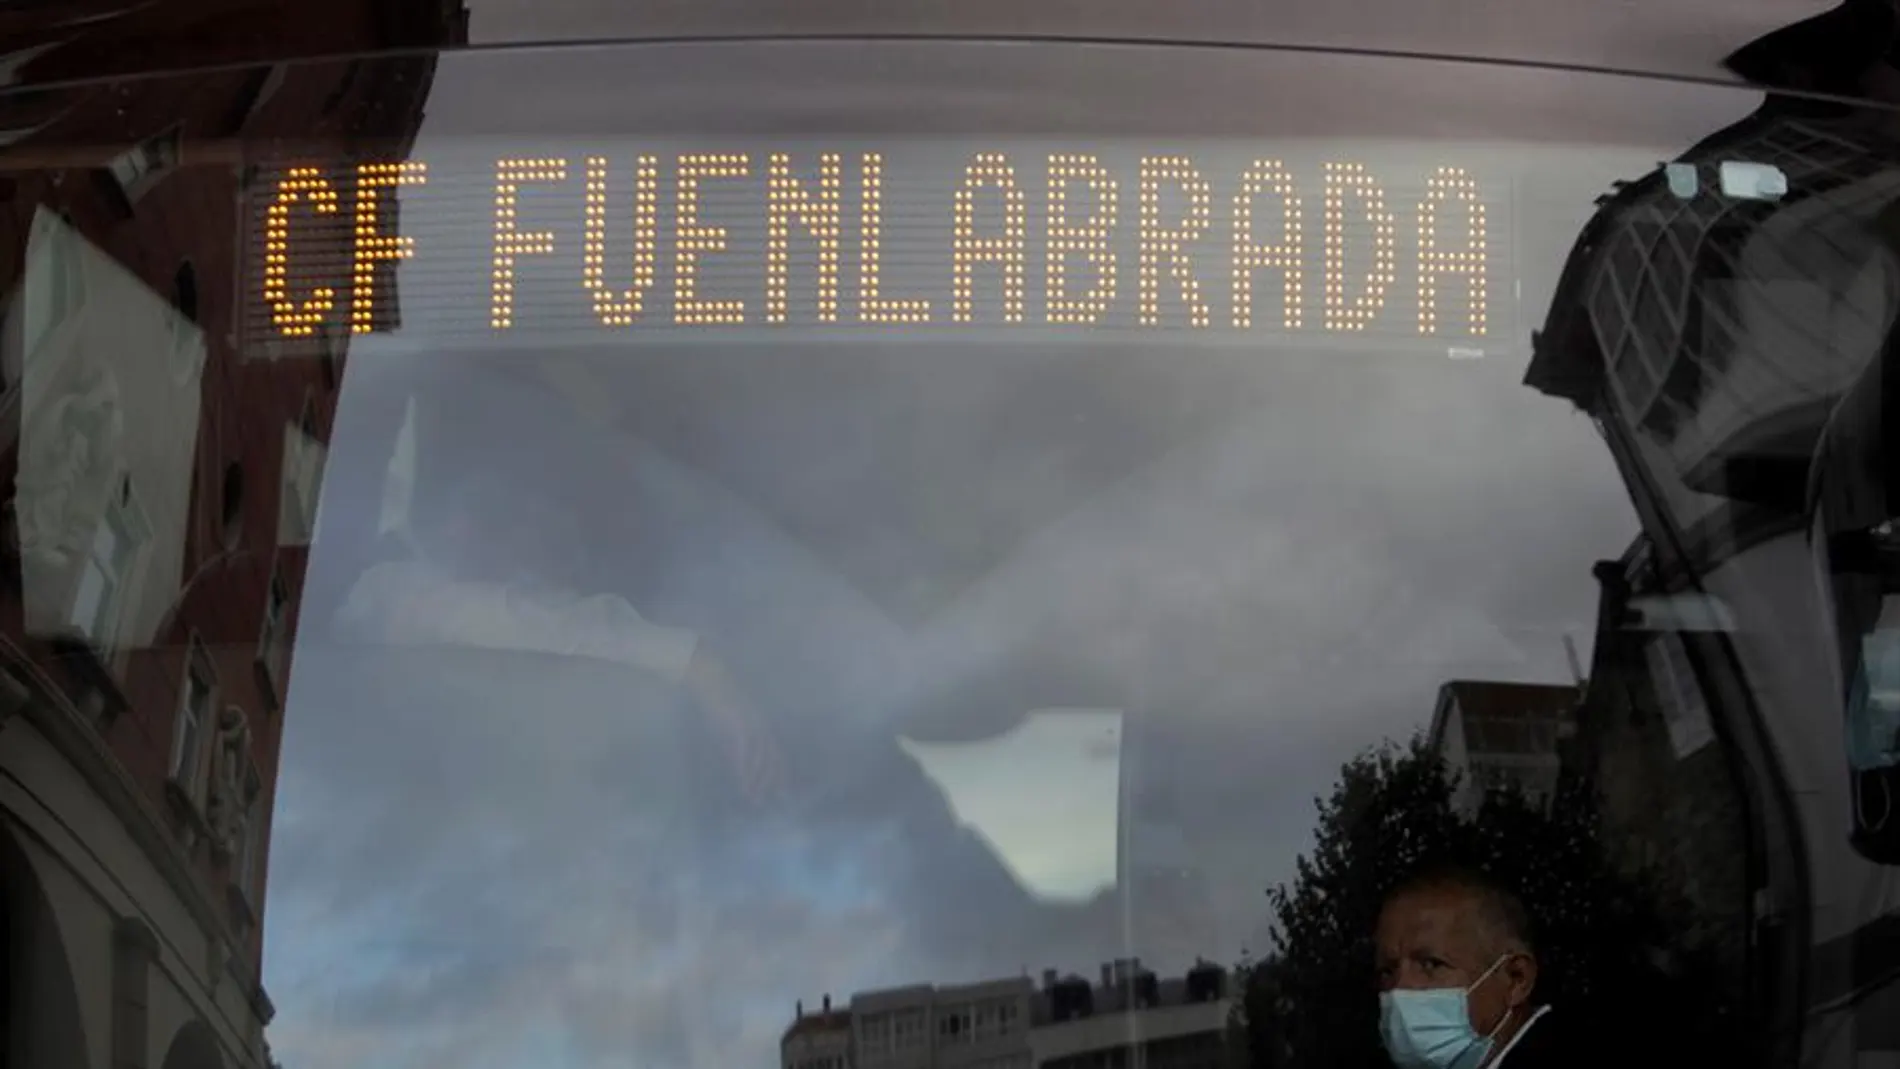 El autobús del Fuenlabrada aparcado a las puertas del hotel Finisterre de A Coruña